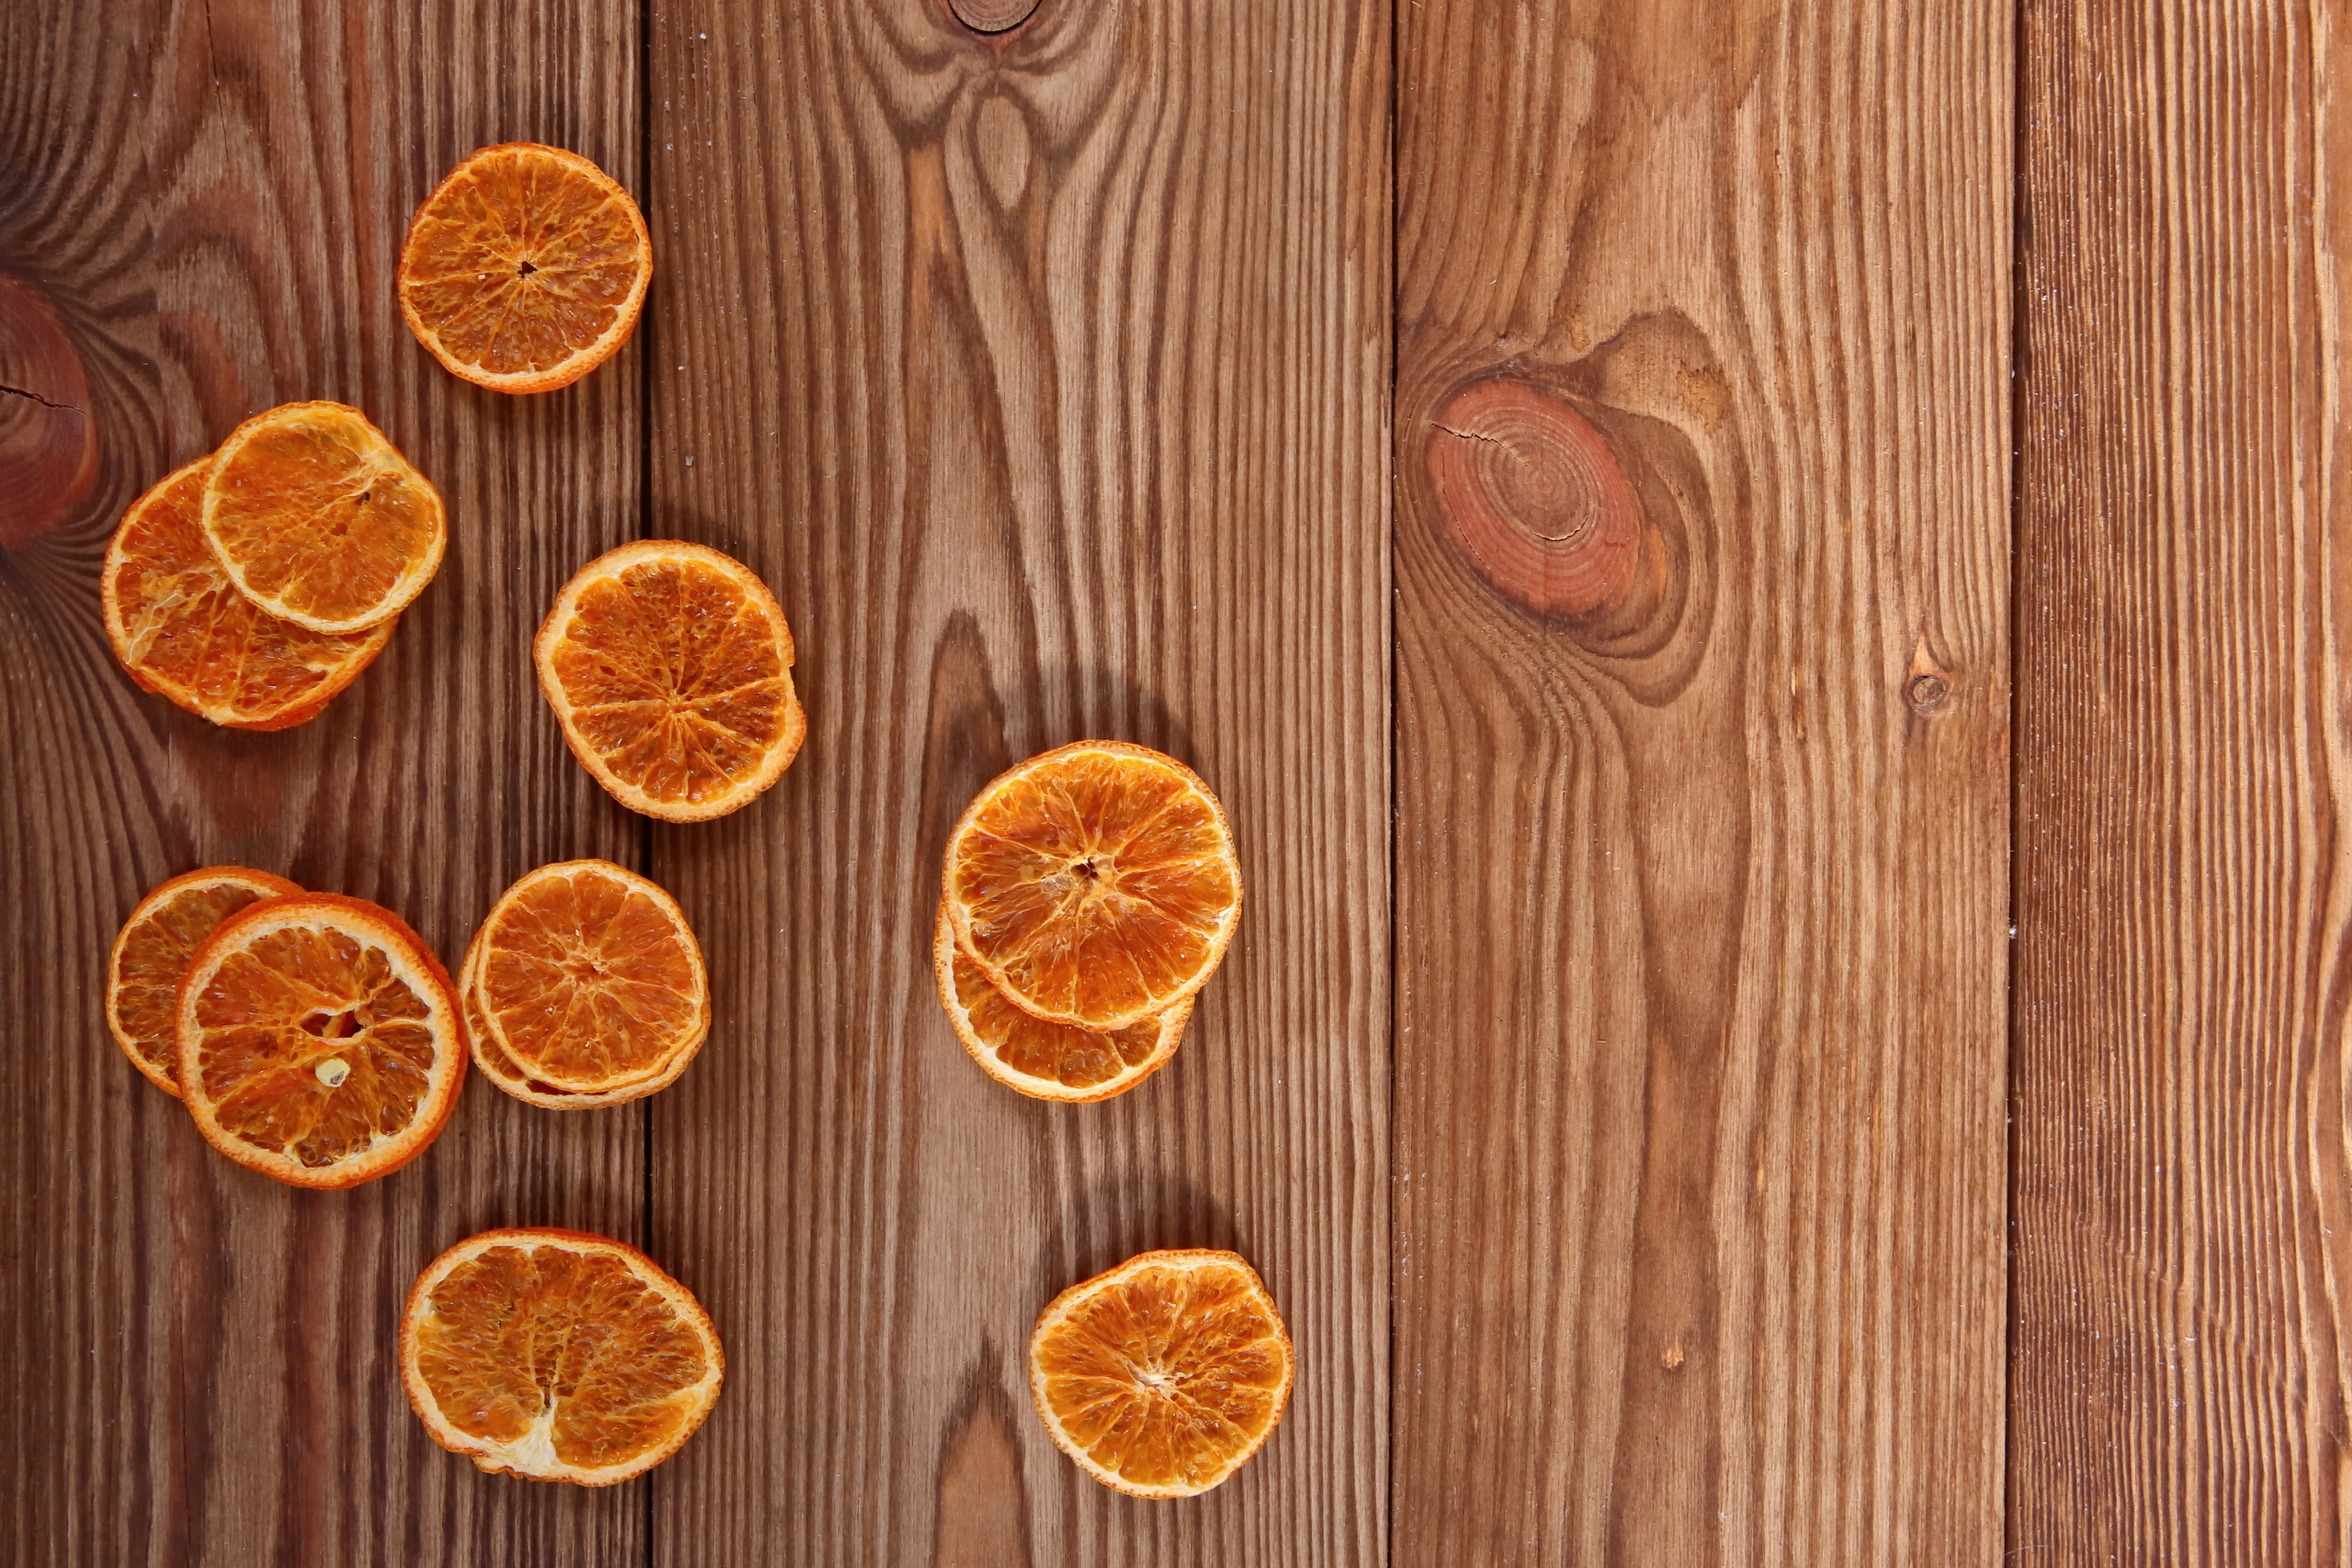 jak suszyć pomarańcze